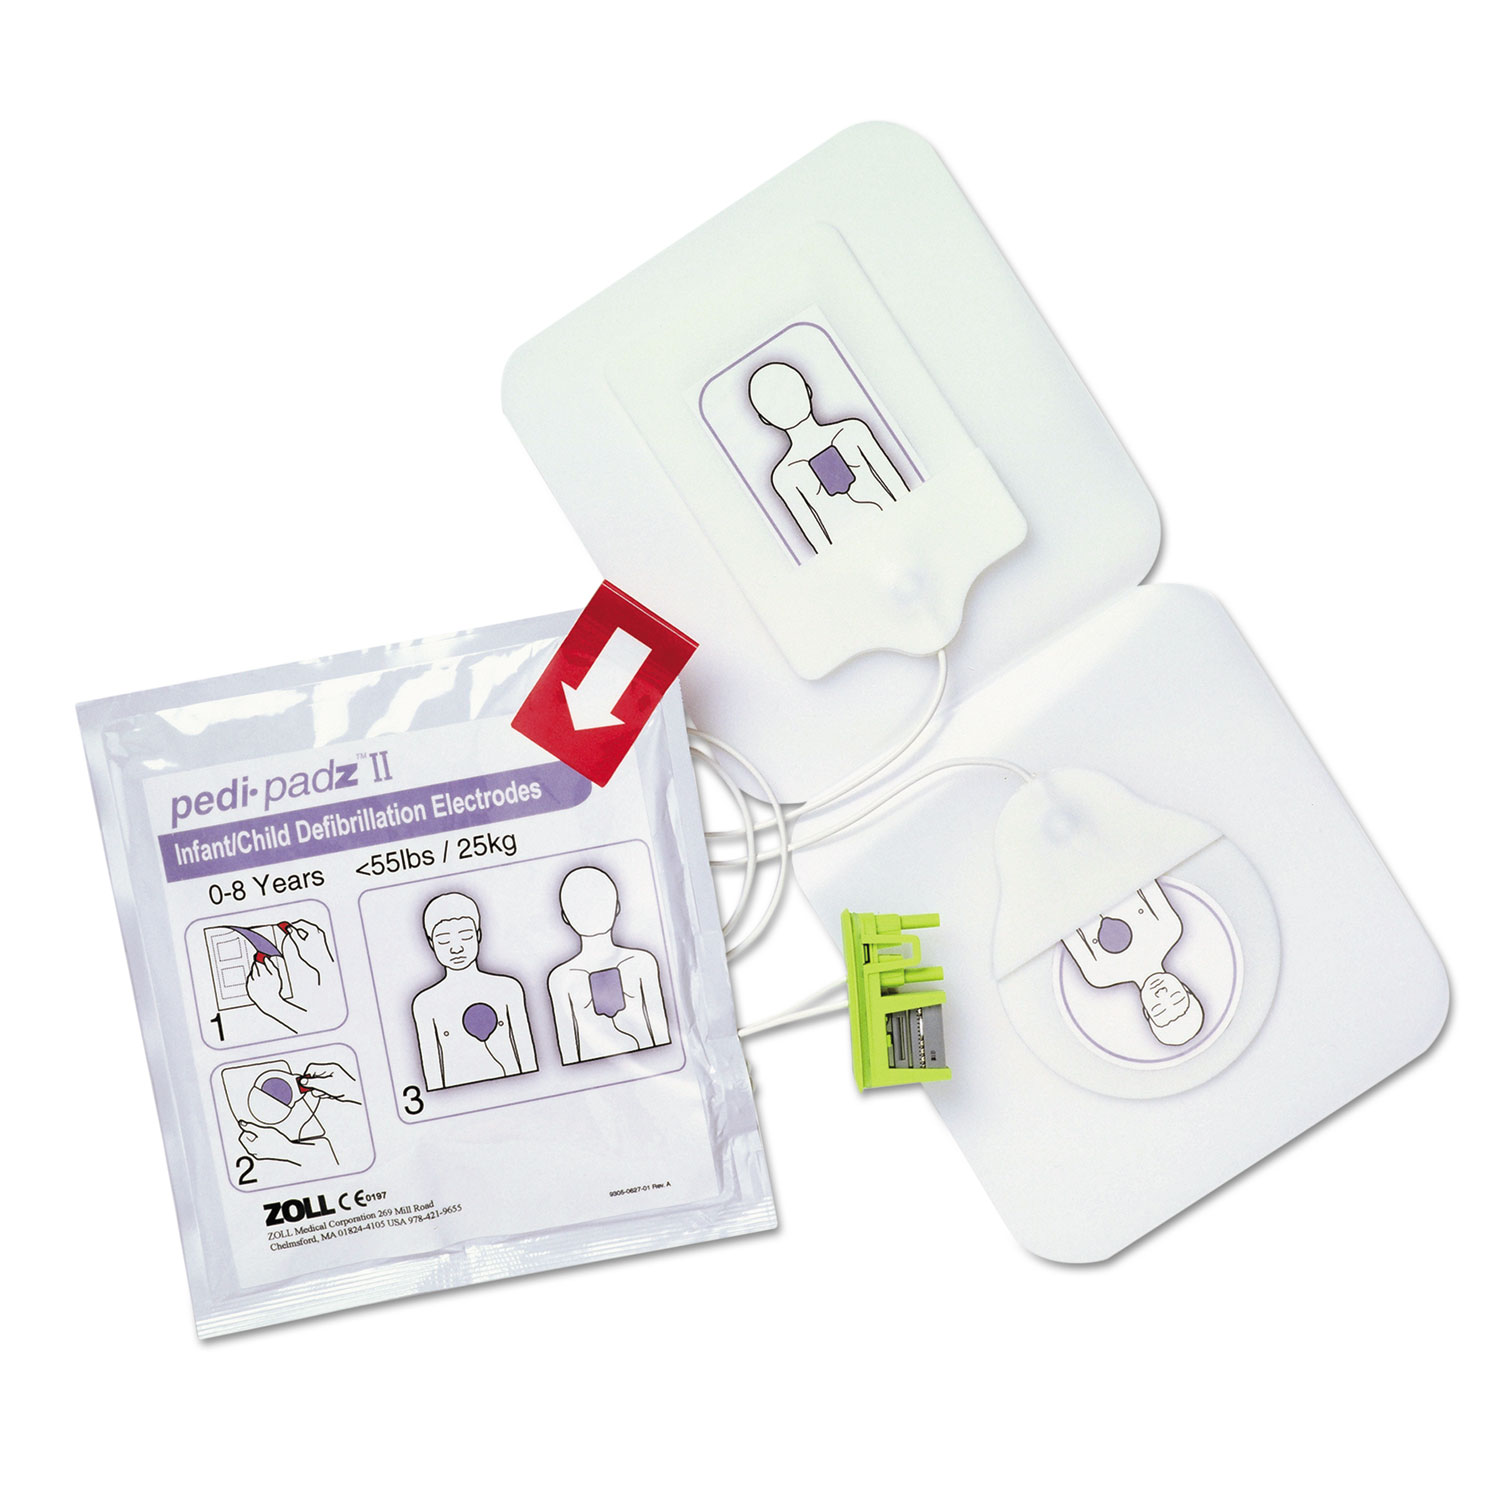  ZOLL 8900081001 Pedi-padz II Defibrillator Pads, Children Up to 8 Years Old, 2-Year Shelf Life (ZOL8900081001) 